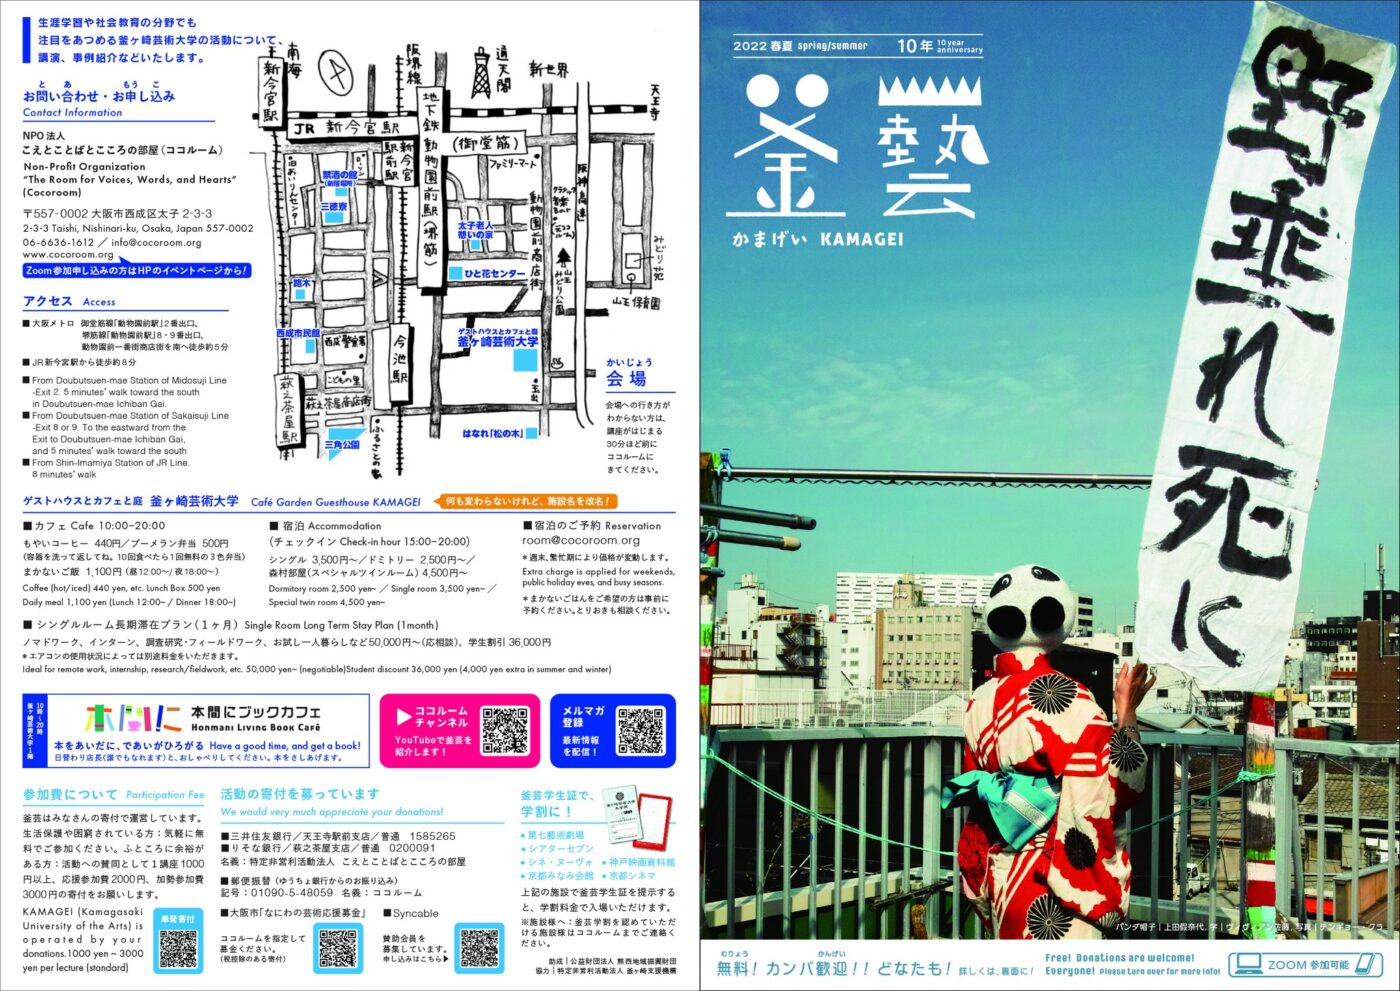 「釜ヶ崎アーツセンター構想」を構想する。「釜ヶ崎芸術大学2022」前期プログラムが発表。